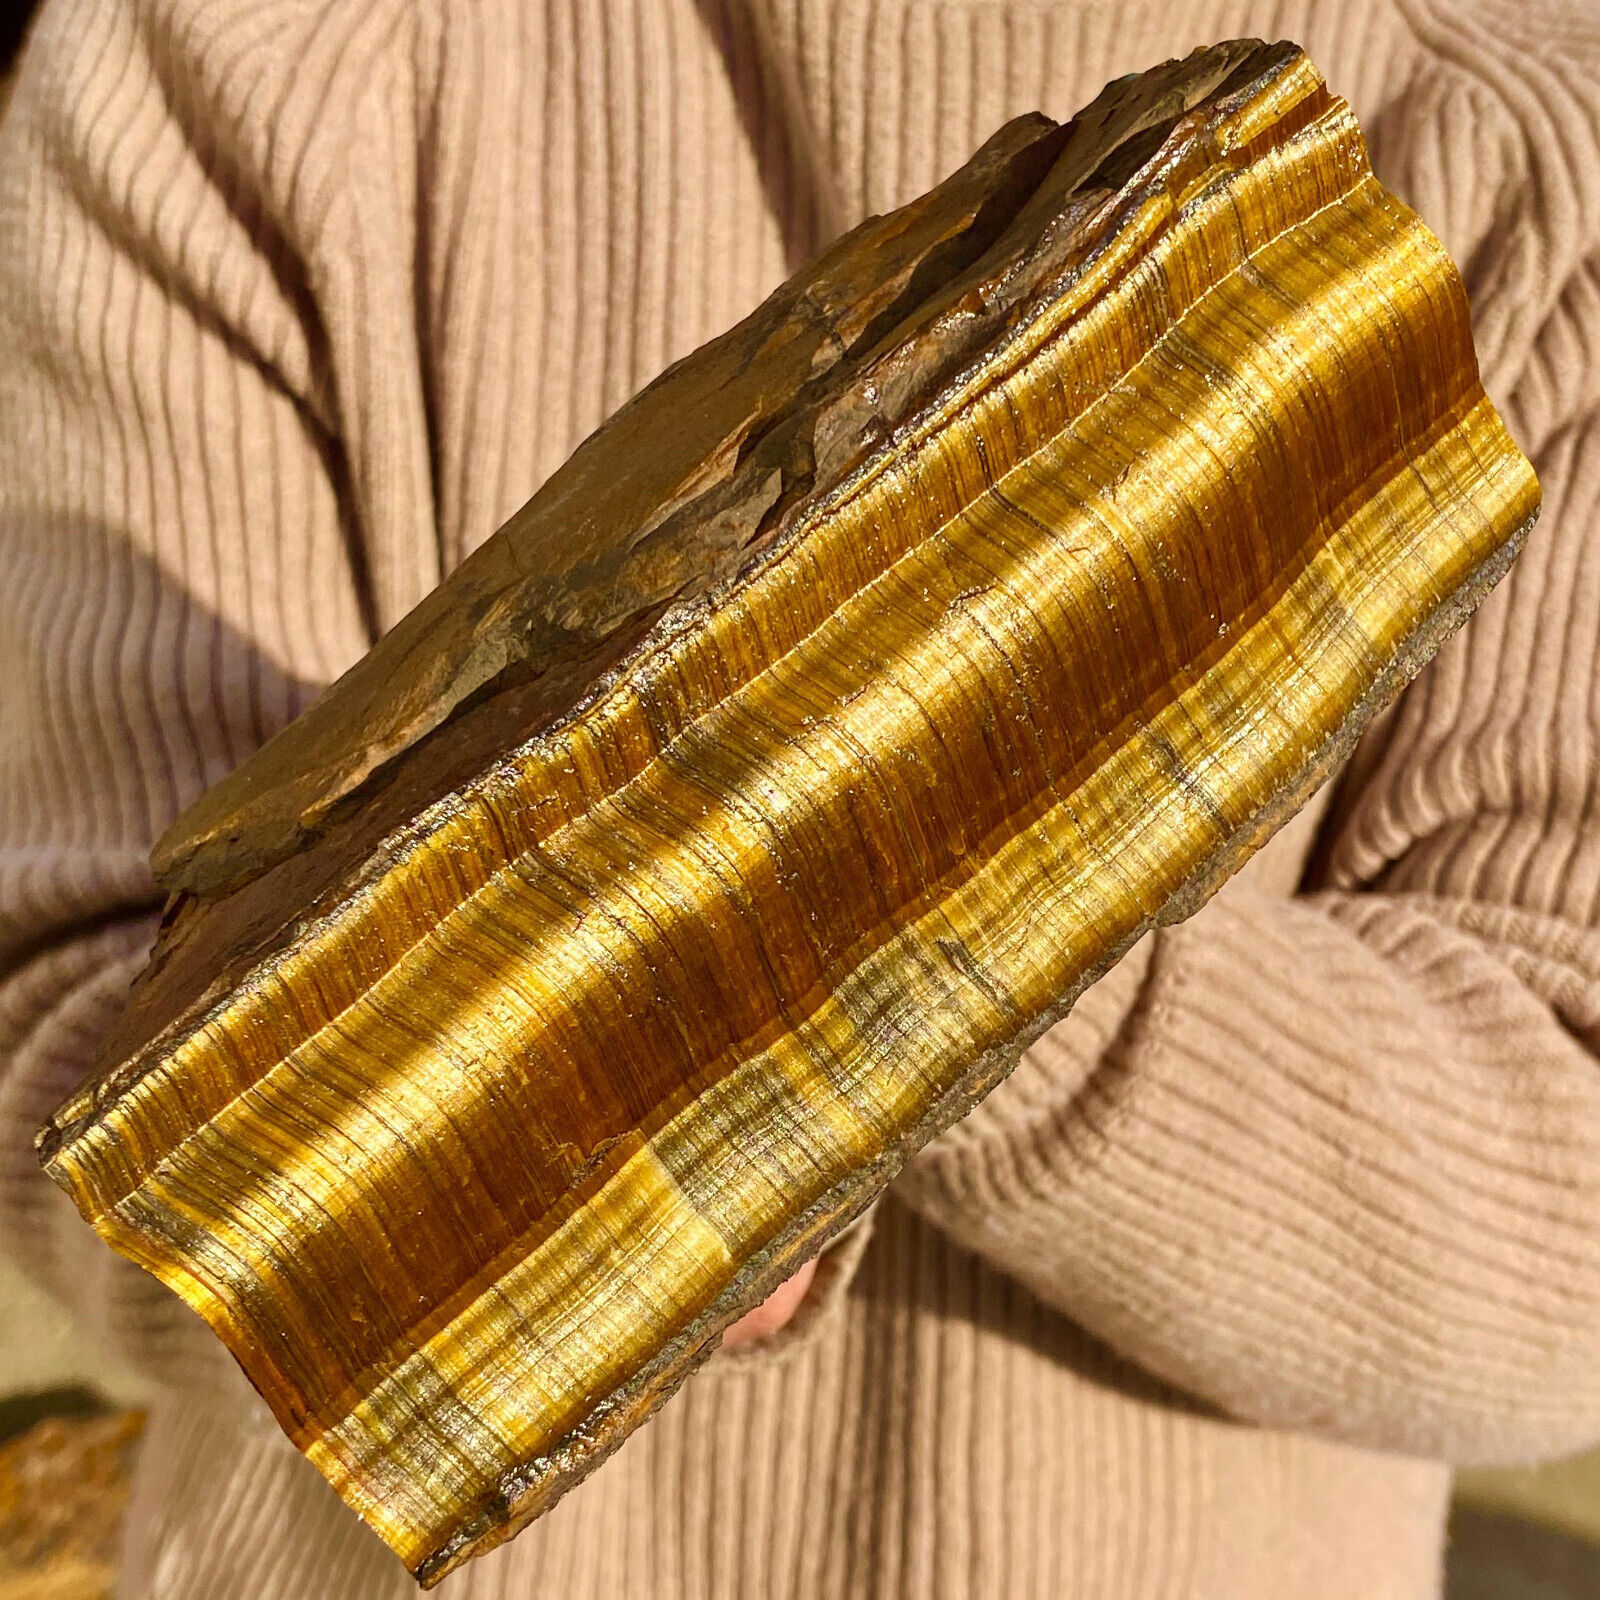 7.16LB Large Golden Tiger'S Eye Rock Quartz Crystal Mineral Specimen Metaphysics